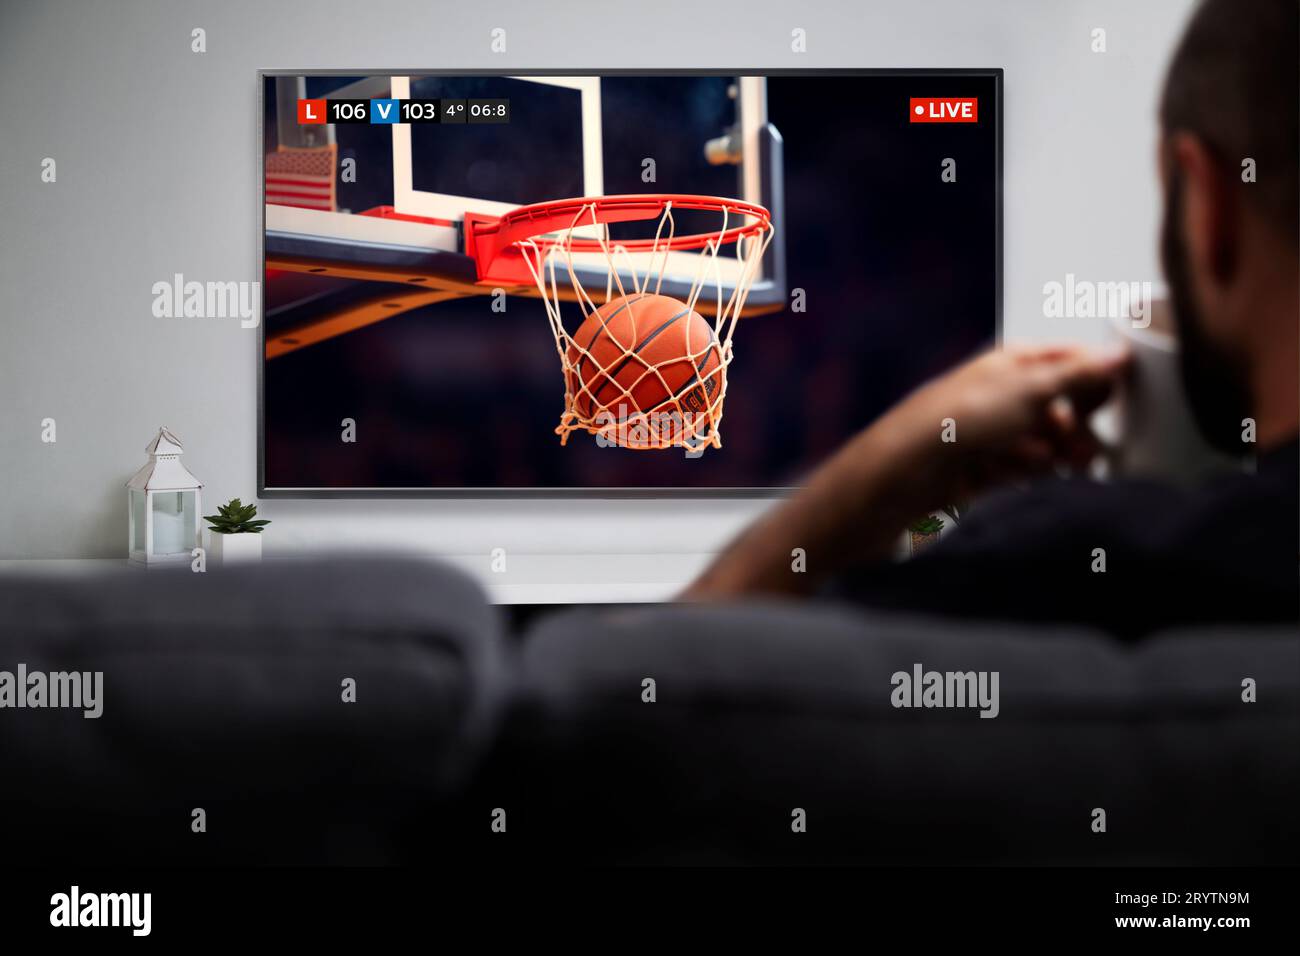 Mann, der Basketballspiele im Smart-TV ansieht, während er Kaffee trinkt. Abbildung: Kugel, die in den Ring eindringt. Live-TV-Übertragung. Stockfoto